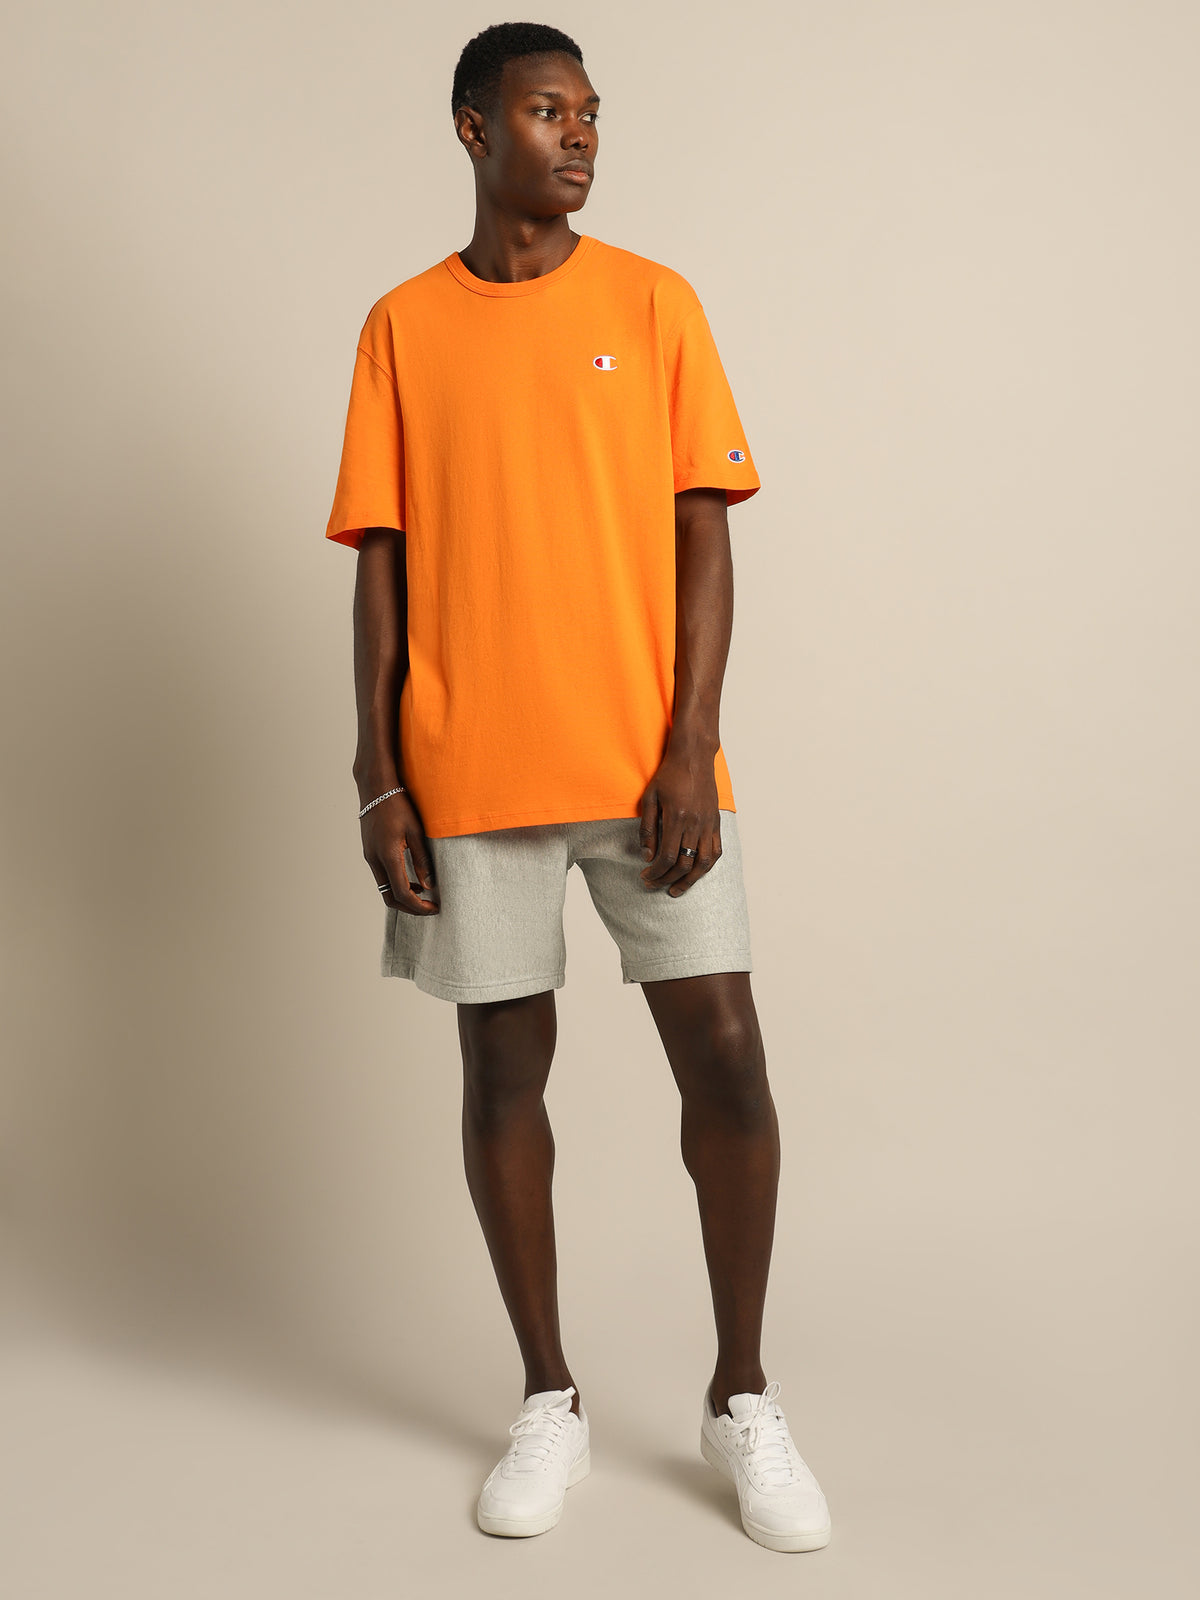 Re:bound Lightweight T-Shirt in Orange